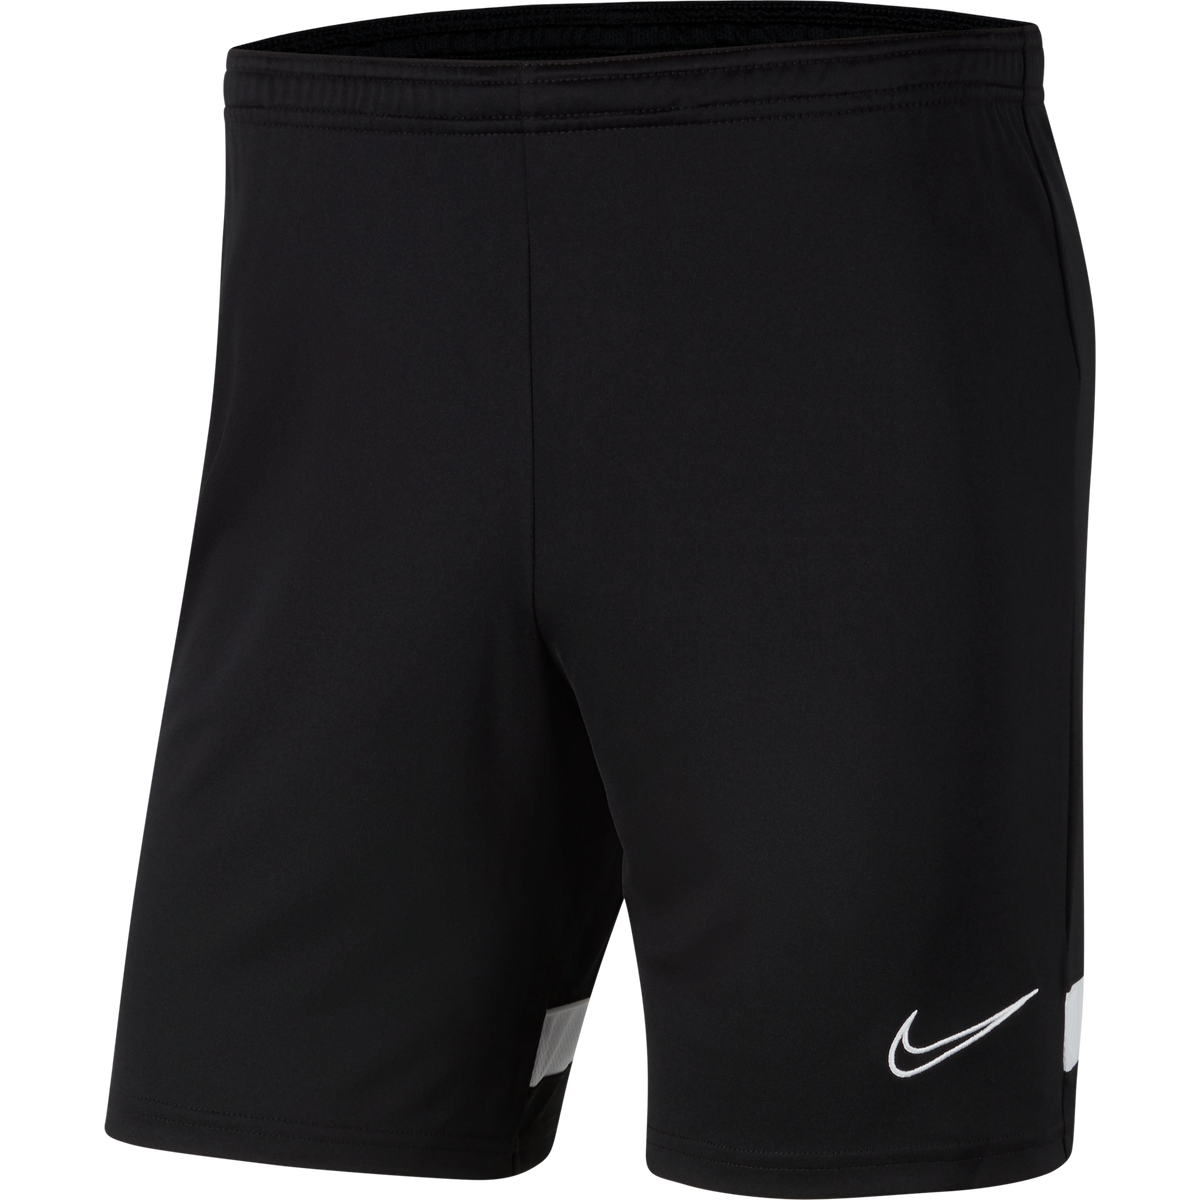 WLSP Nike Mens Shorts